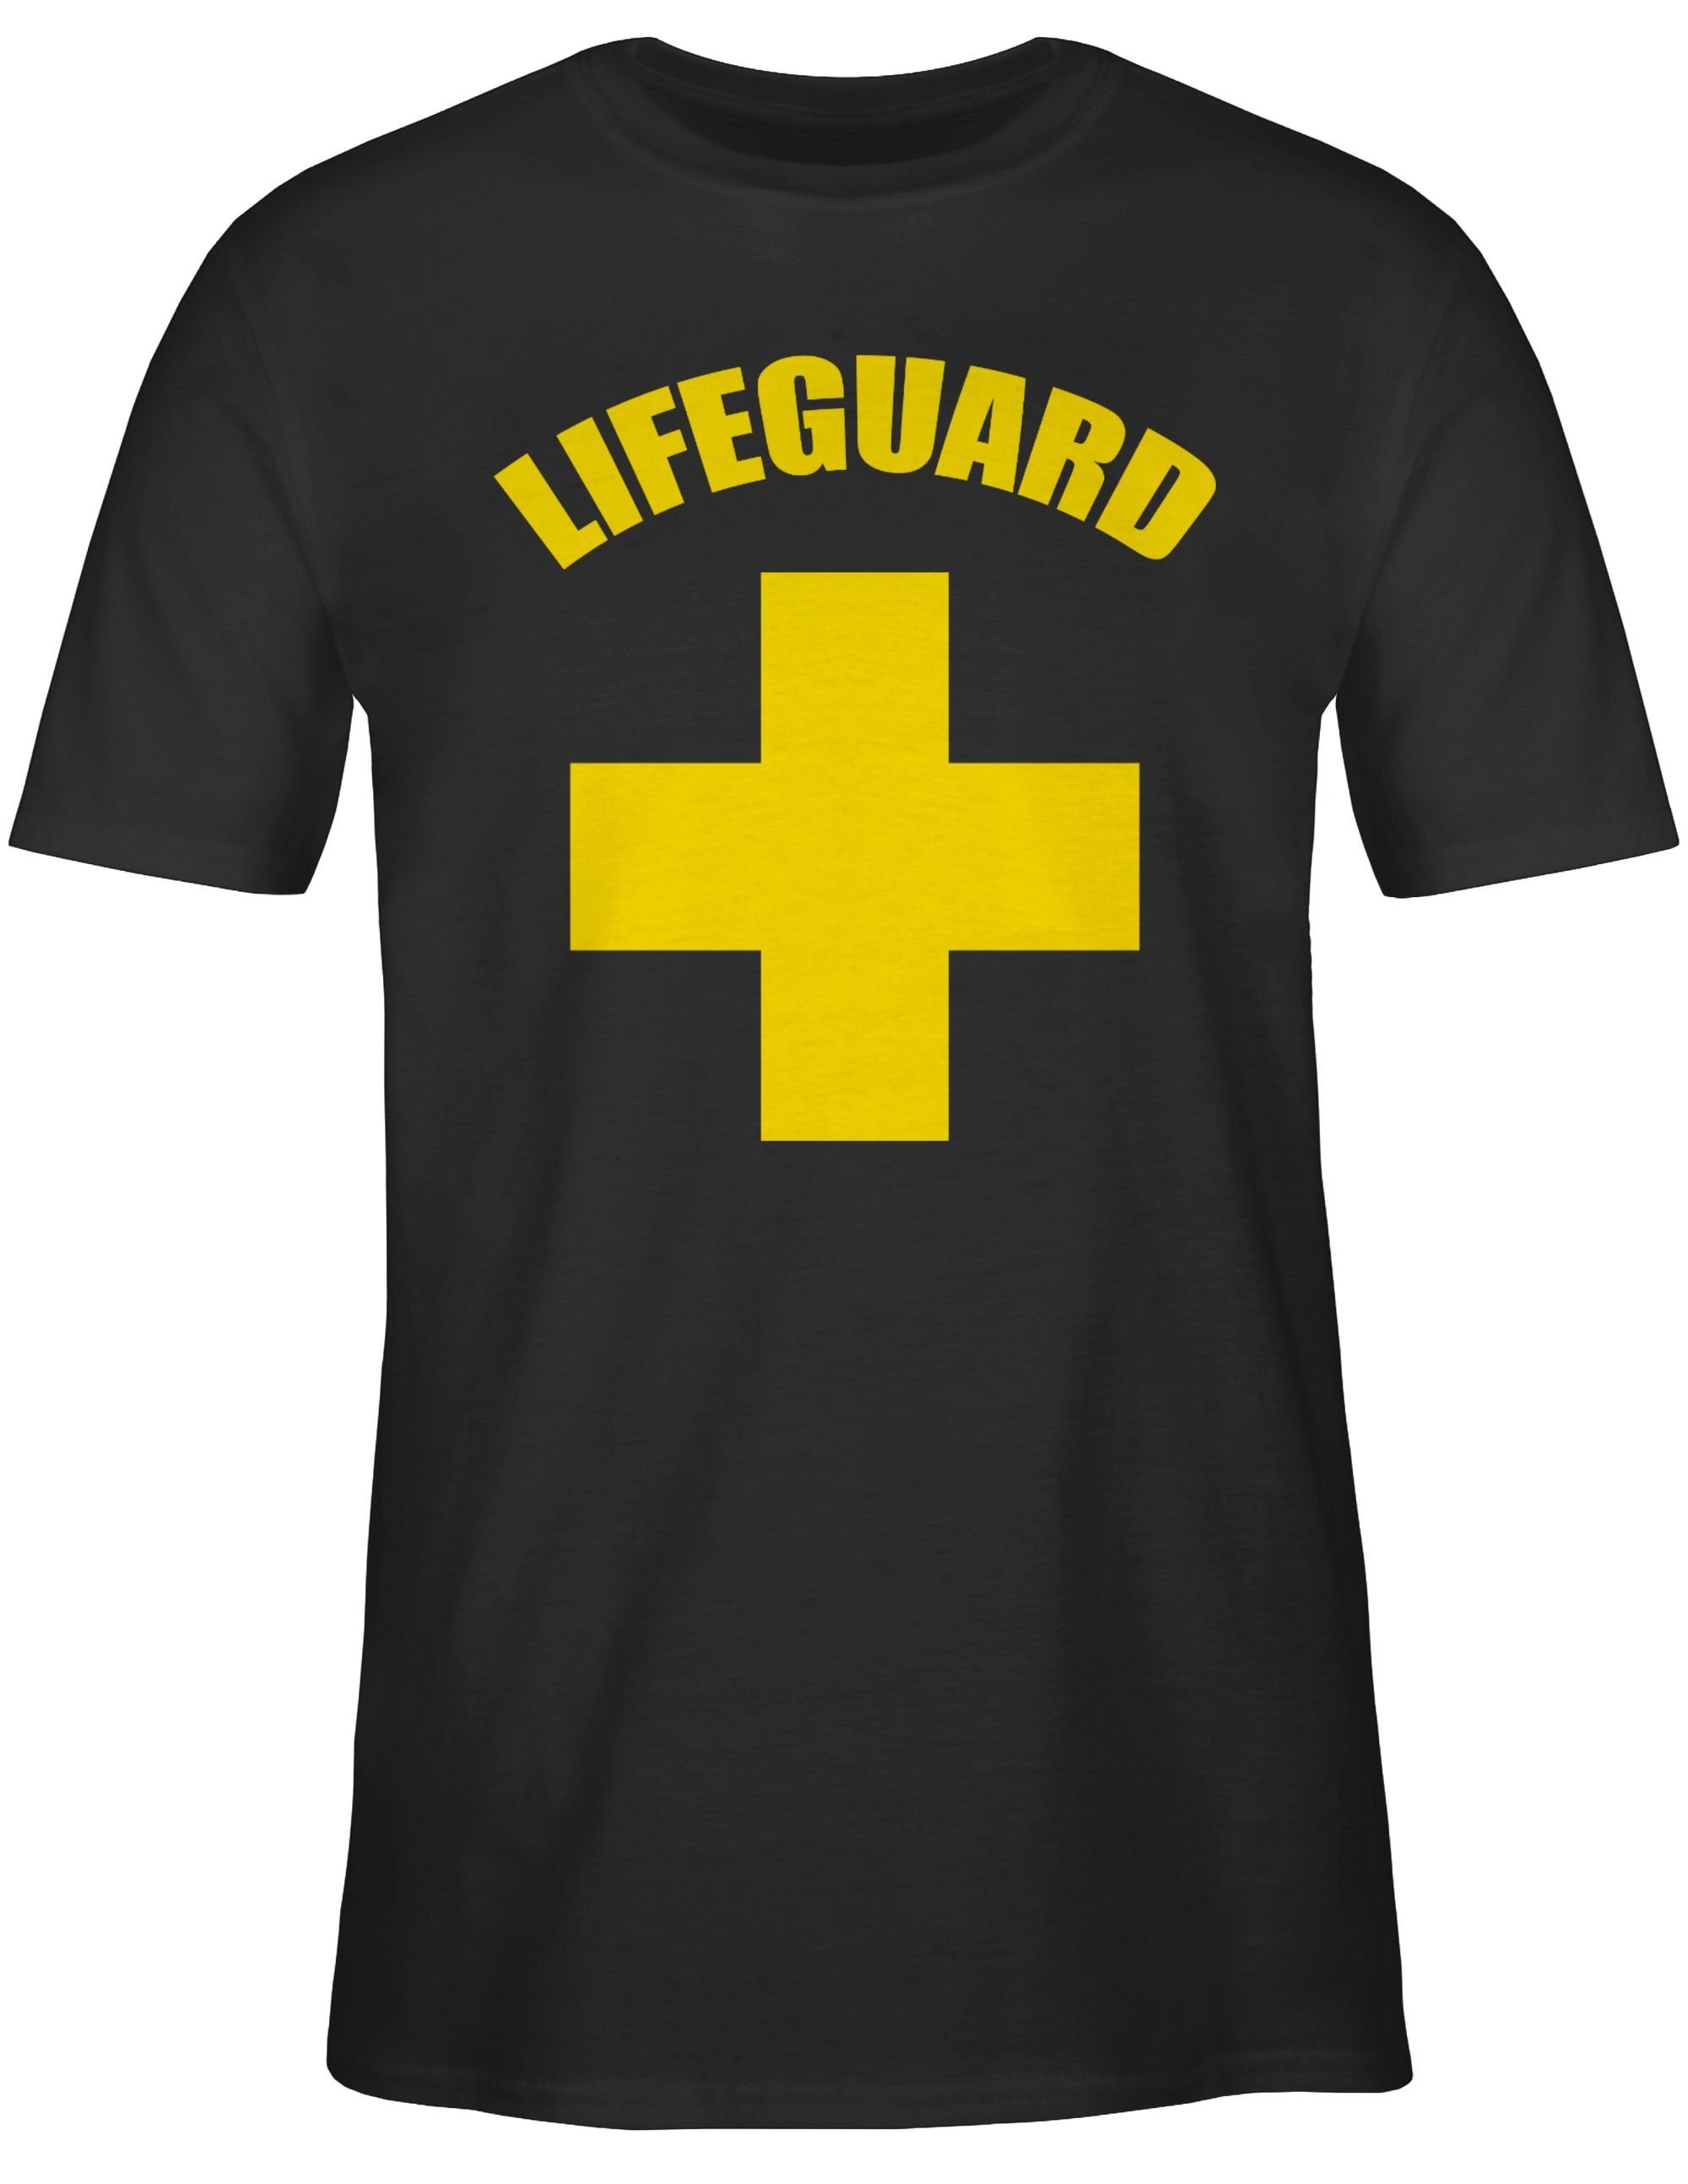 Shirtracer T-Shirt Lifeguard Outfit Wasserrettung 3 Schwarz Karneval Rettungsschwimmer Baywatch